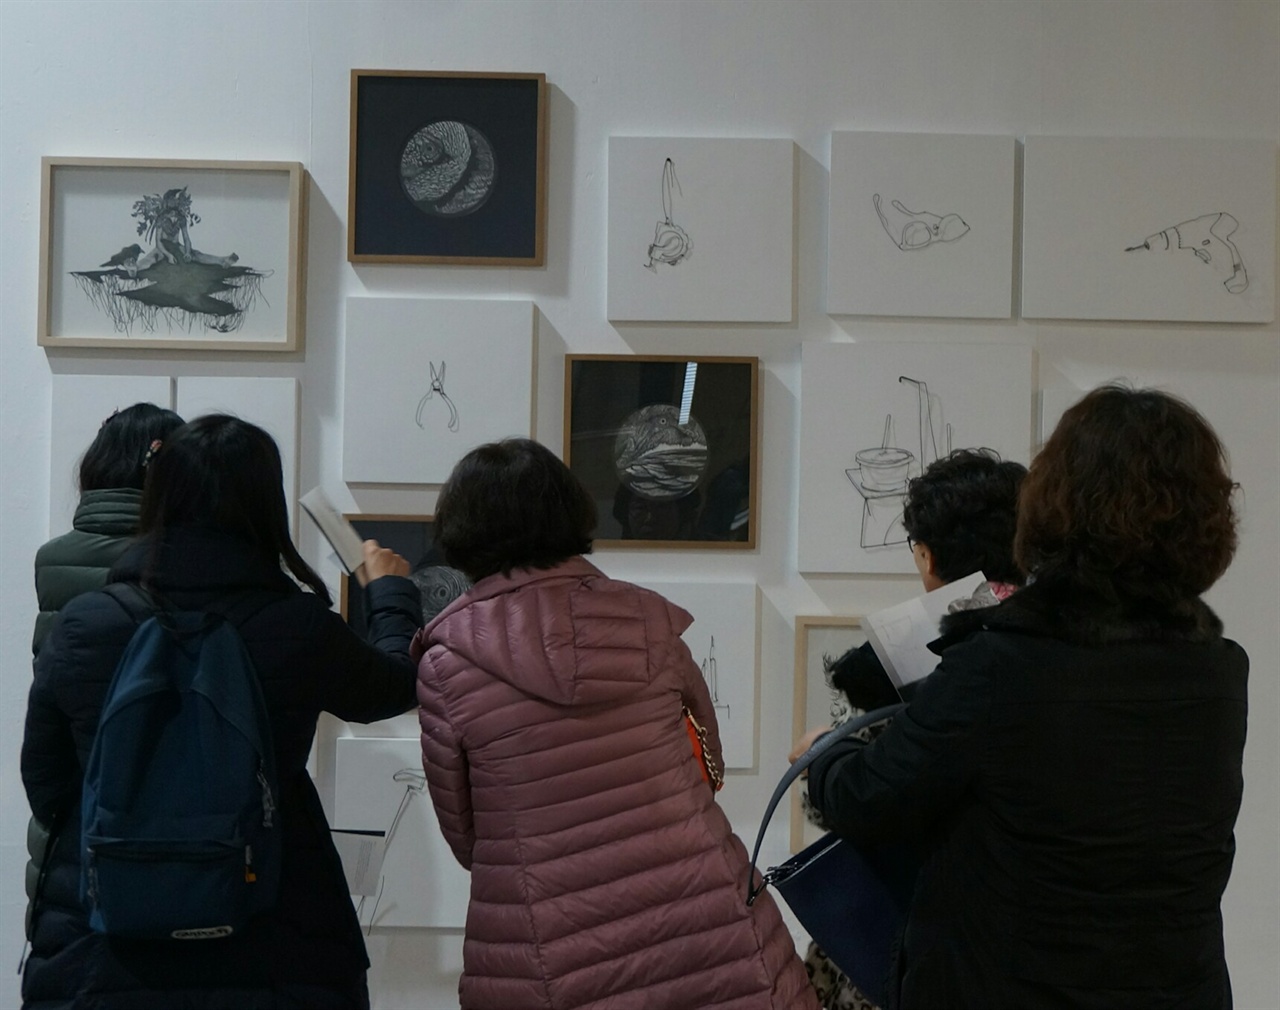  관람객들이 샘표 이천공장내'샘표 스페이스'에서 전시중인 한지민 작가, 김수현 작가의 작품을 감상하고 있다. 